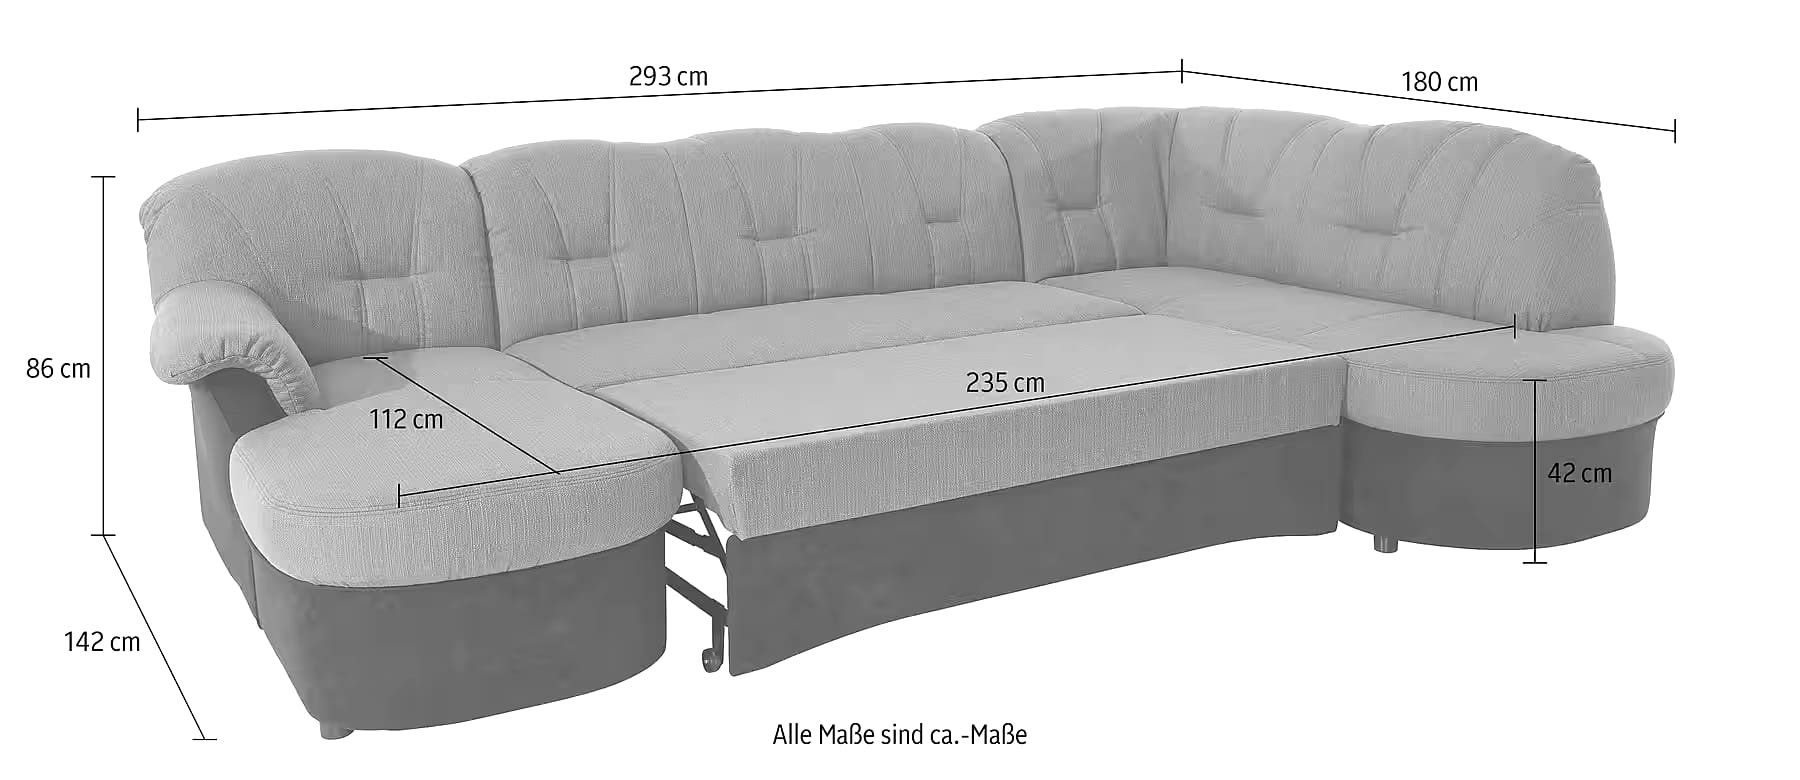 Sofa cama U - Flores N.º de artículo 4464334590